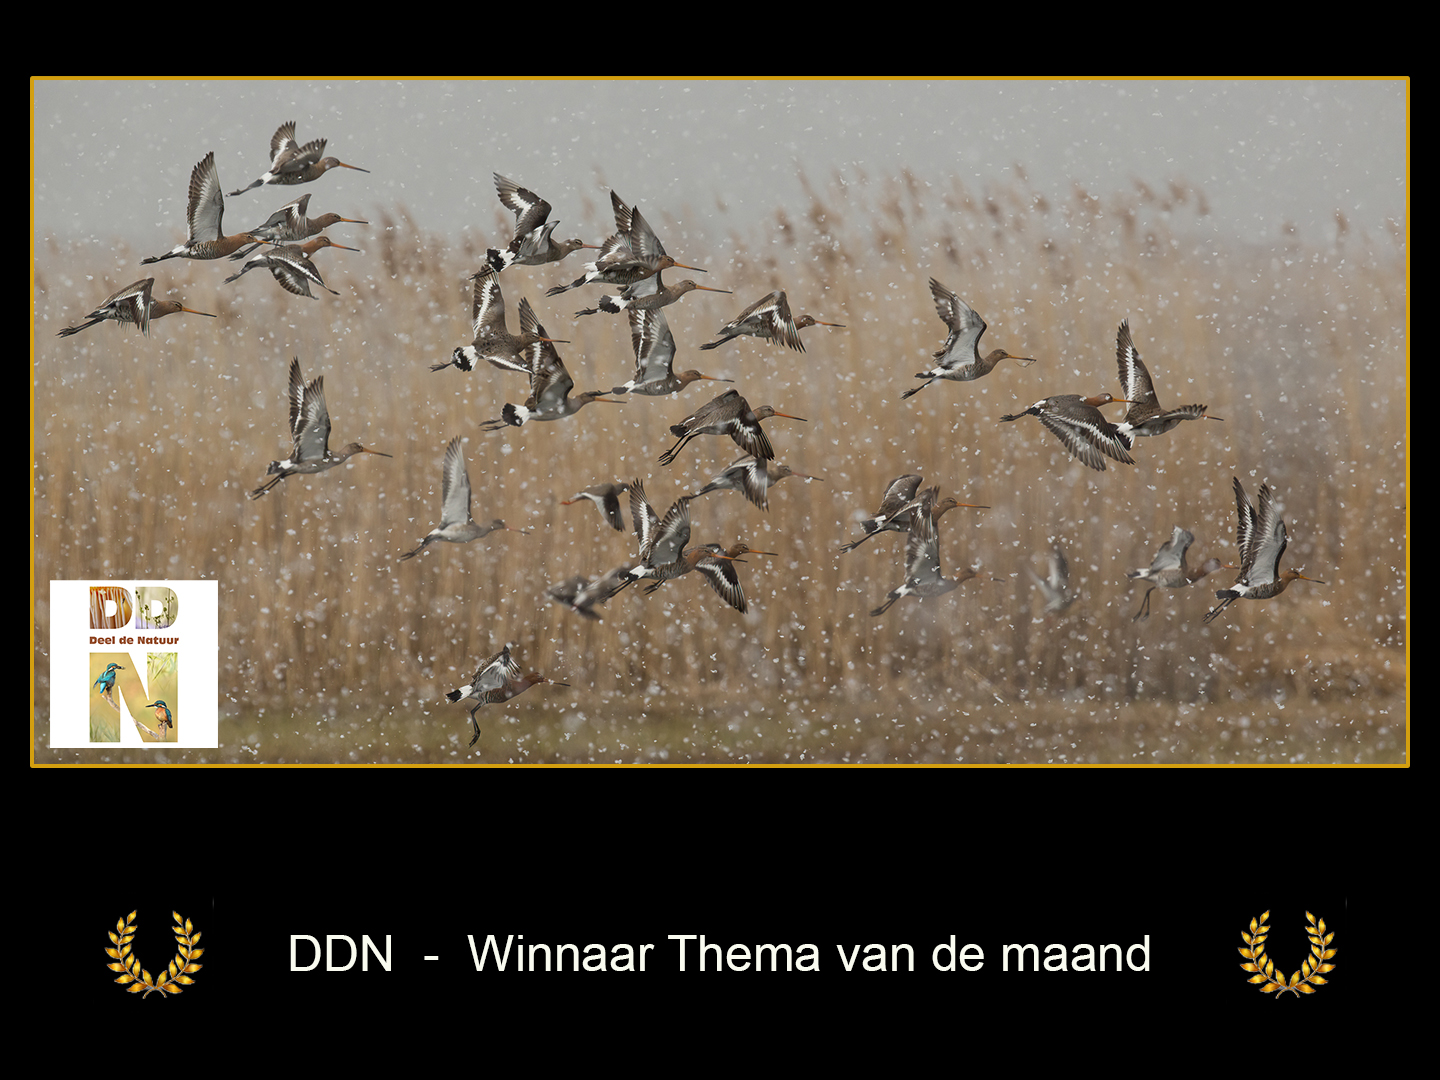 DDN Winnaar maanthema FB 02-2021